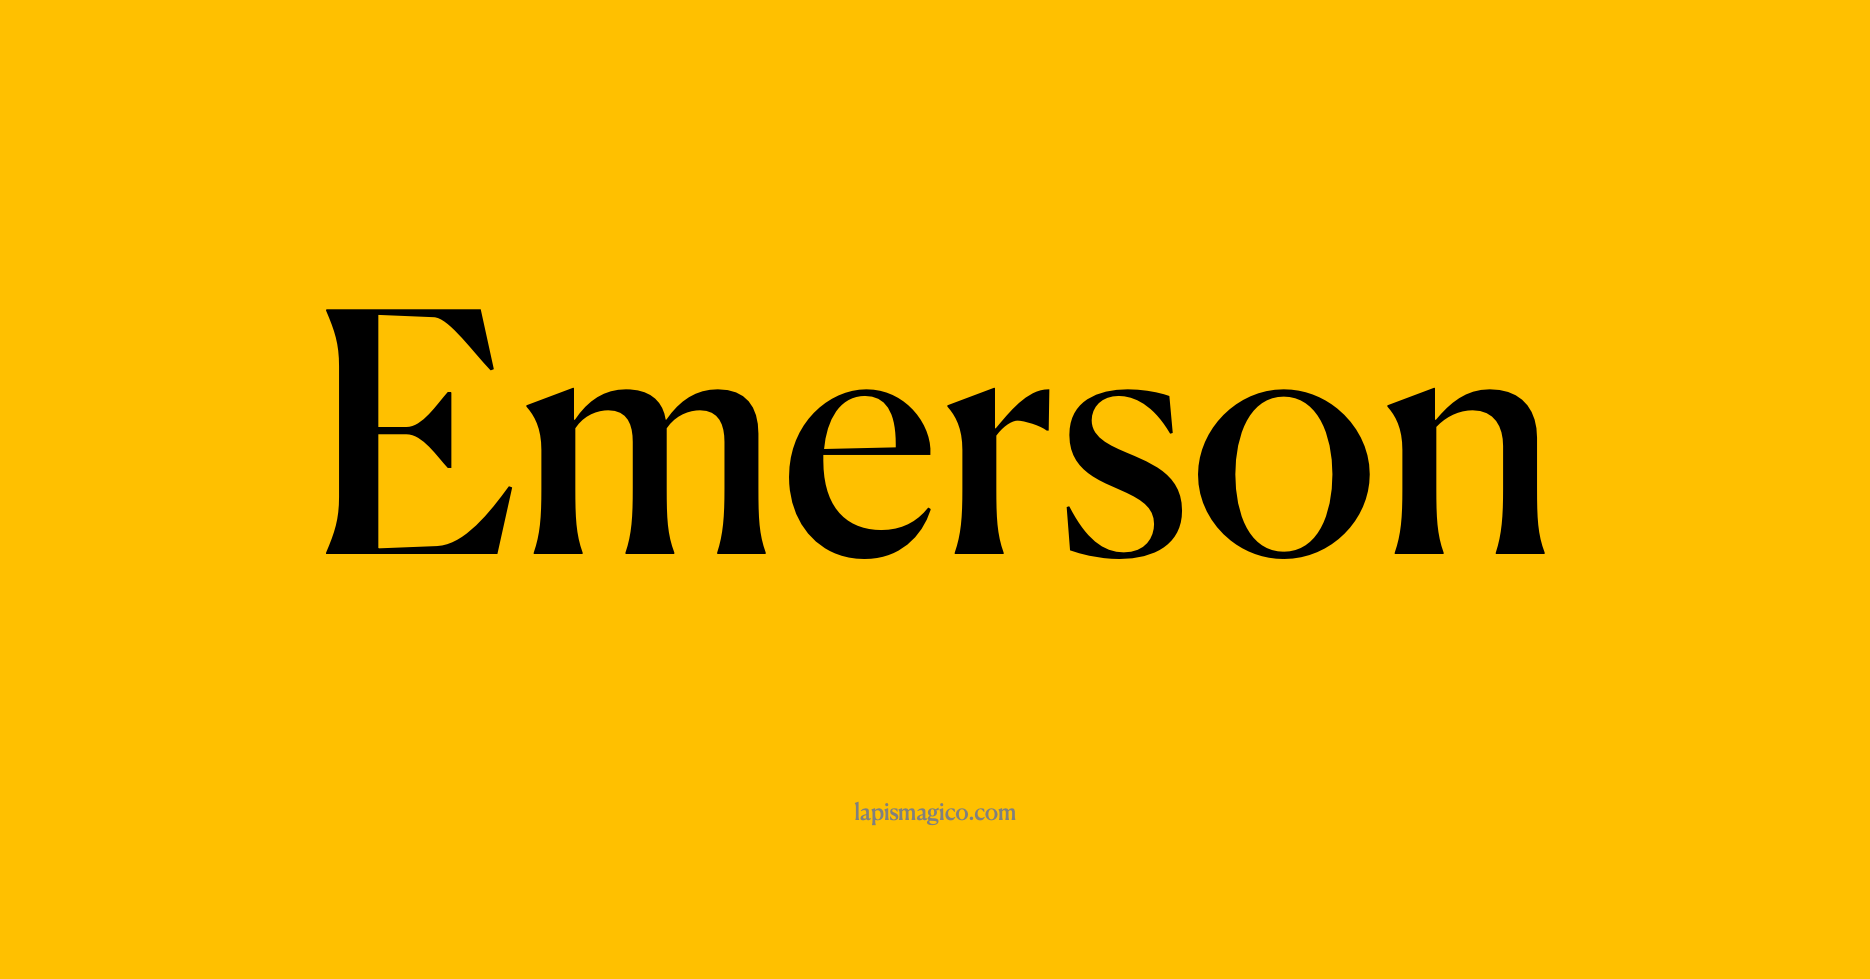 Nome Emerson, ficha divertida com pontilhado para crianças